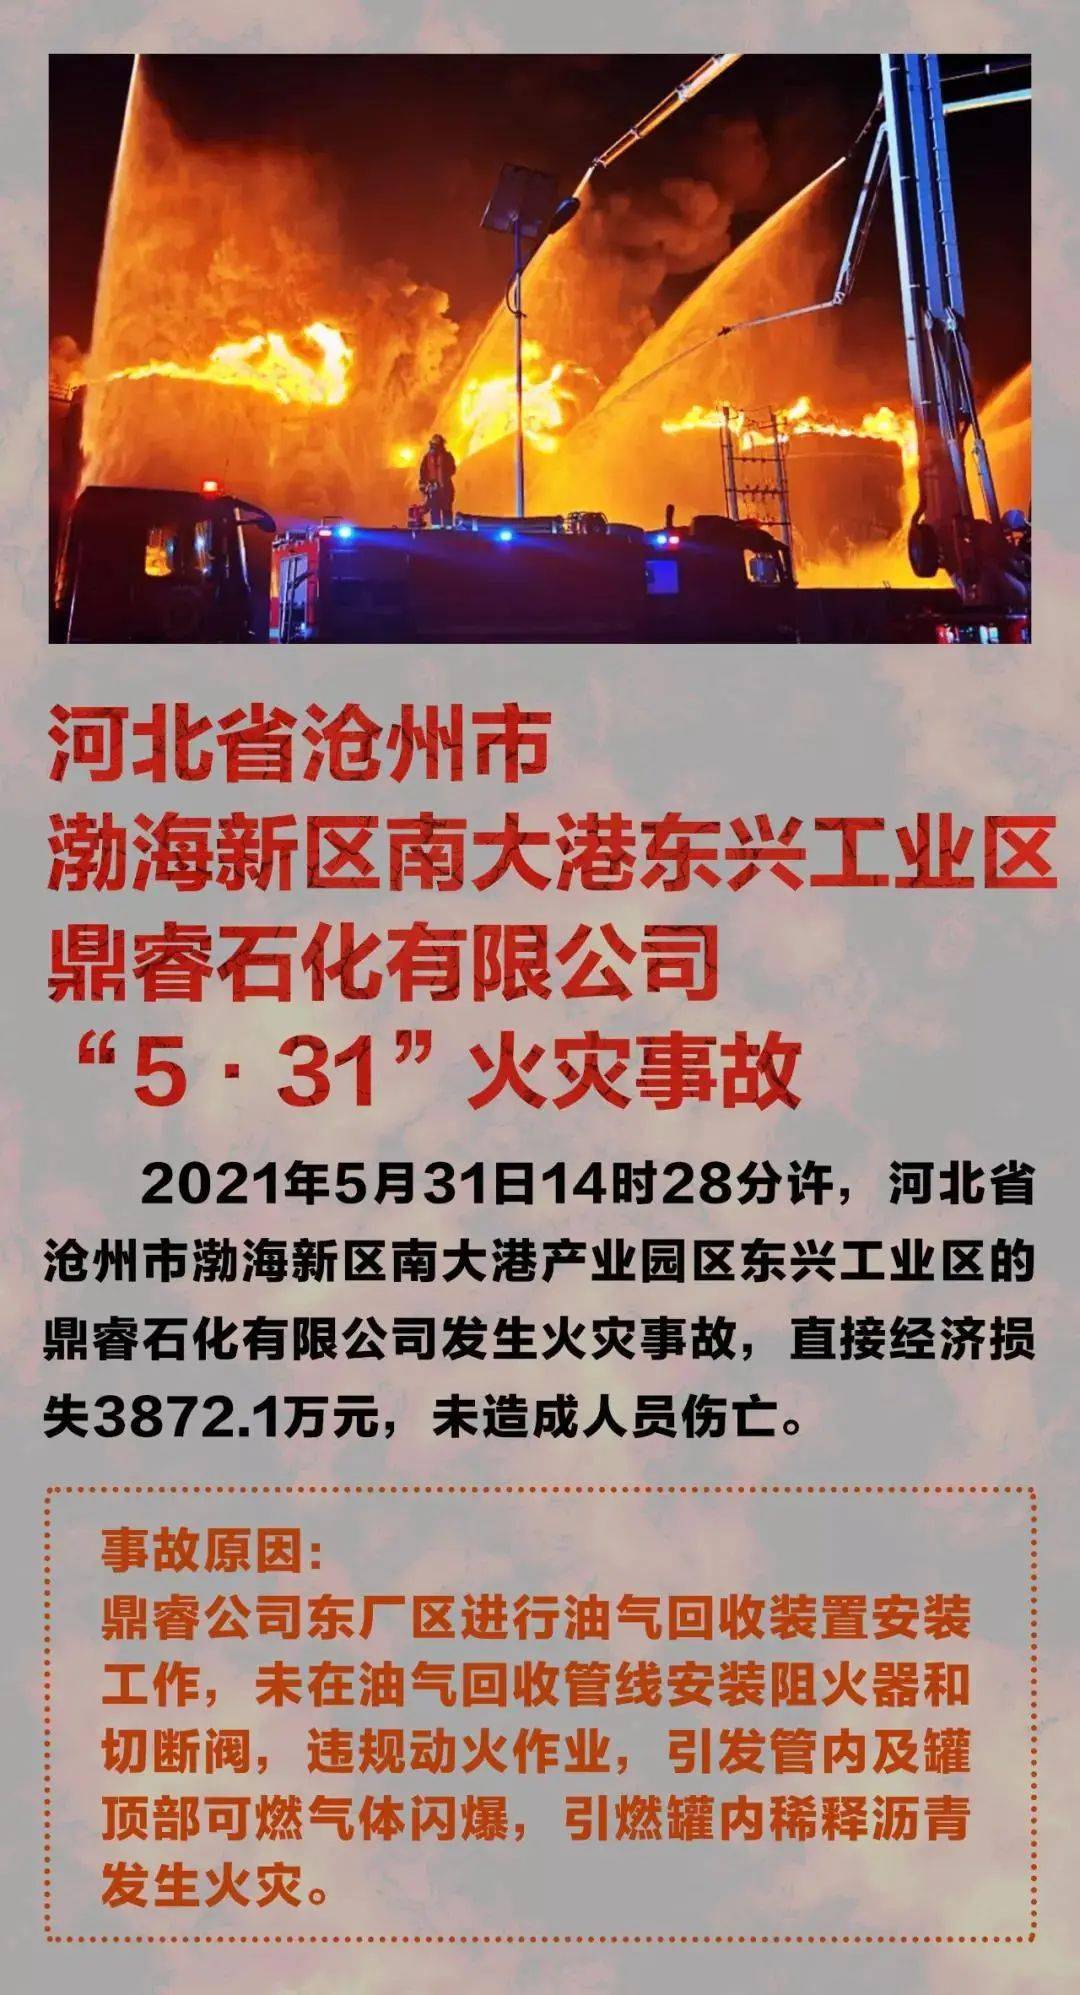 浙江温岭槽罐车爆炸事故致19人死亡 爆炸车辆为液化石油气槽罐车_奇象网